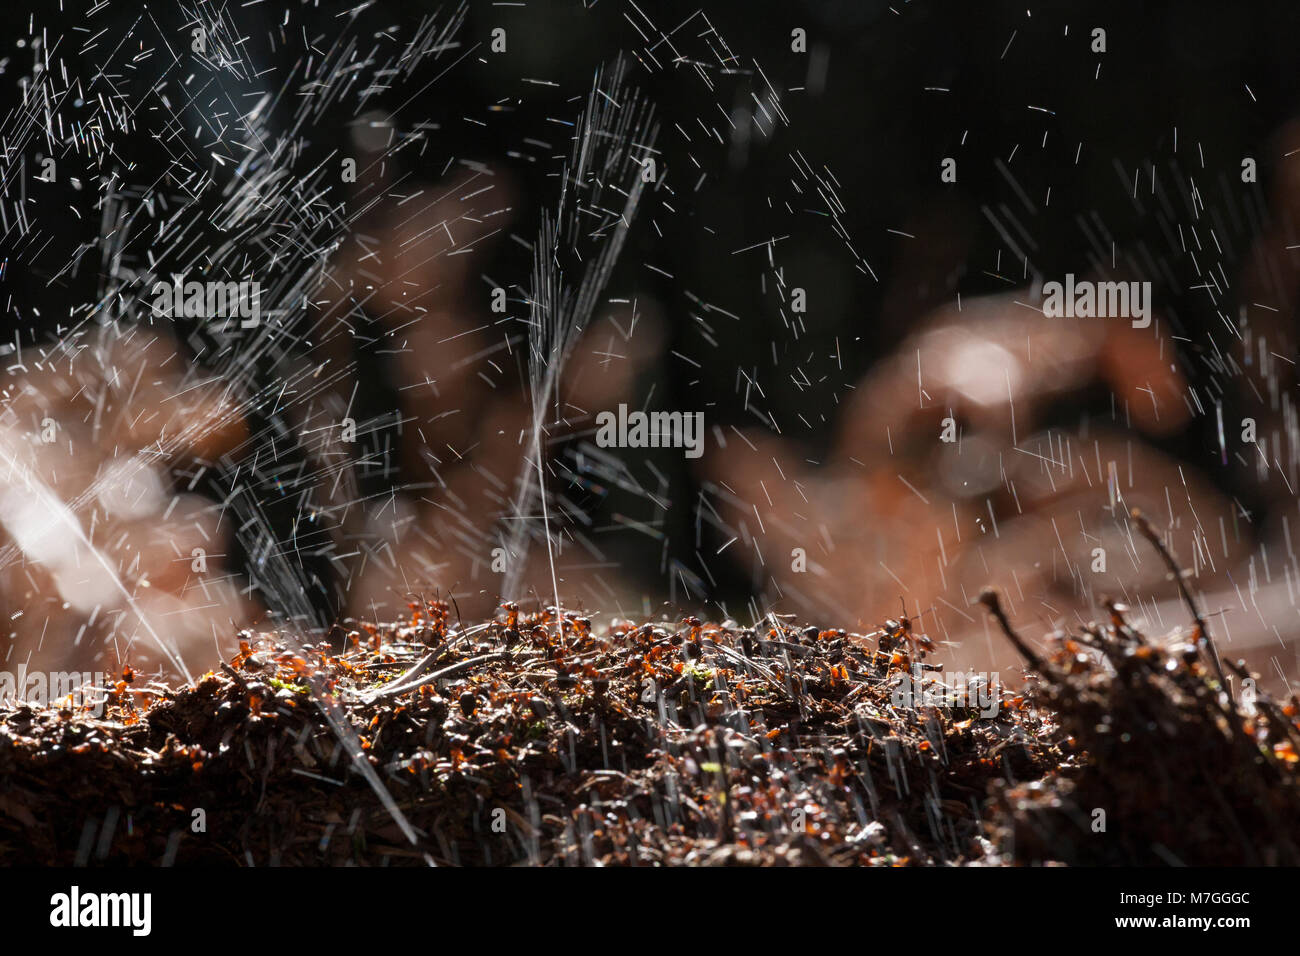 Las hormigas de madera-Formica rufa-defendiendo su nido por aspersión de ácido fórmico. El ácido fórmico se utiliza para disuadir cualquier ataque depredadores. Dorset, Inglaterra GB. Foto de stock